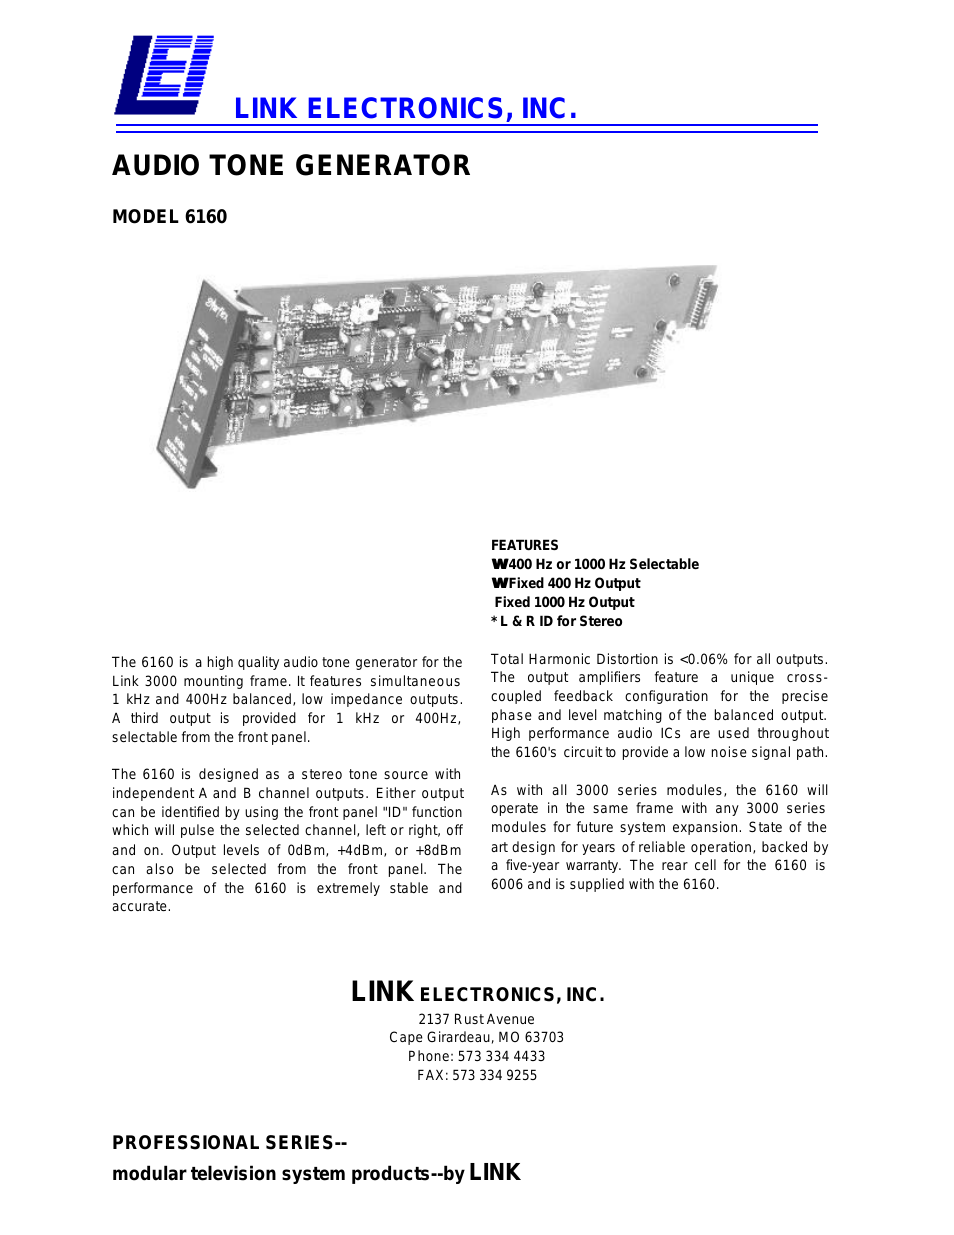 Audio Tone Generator 6160